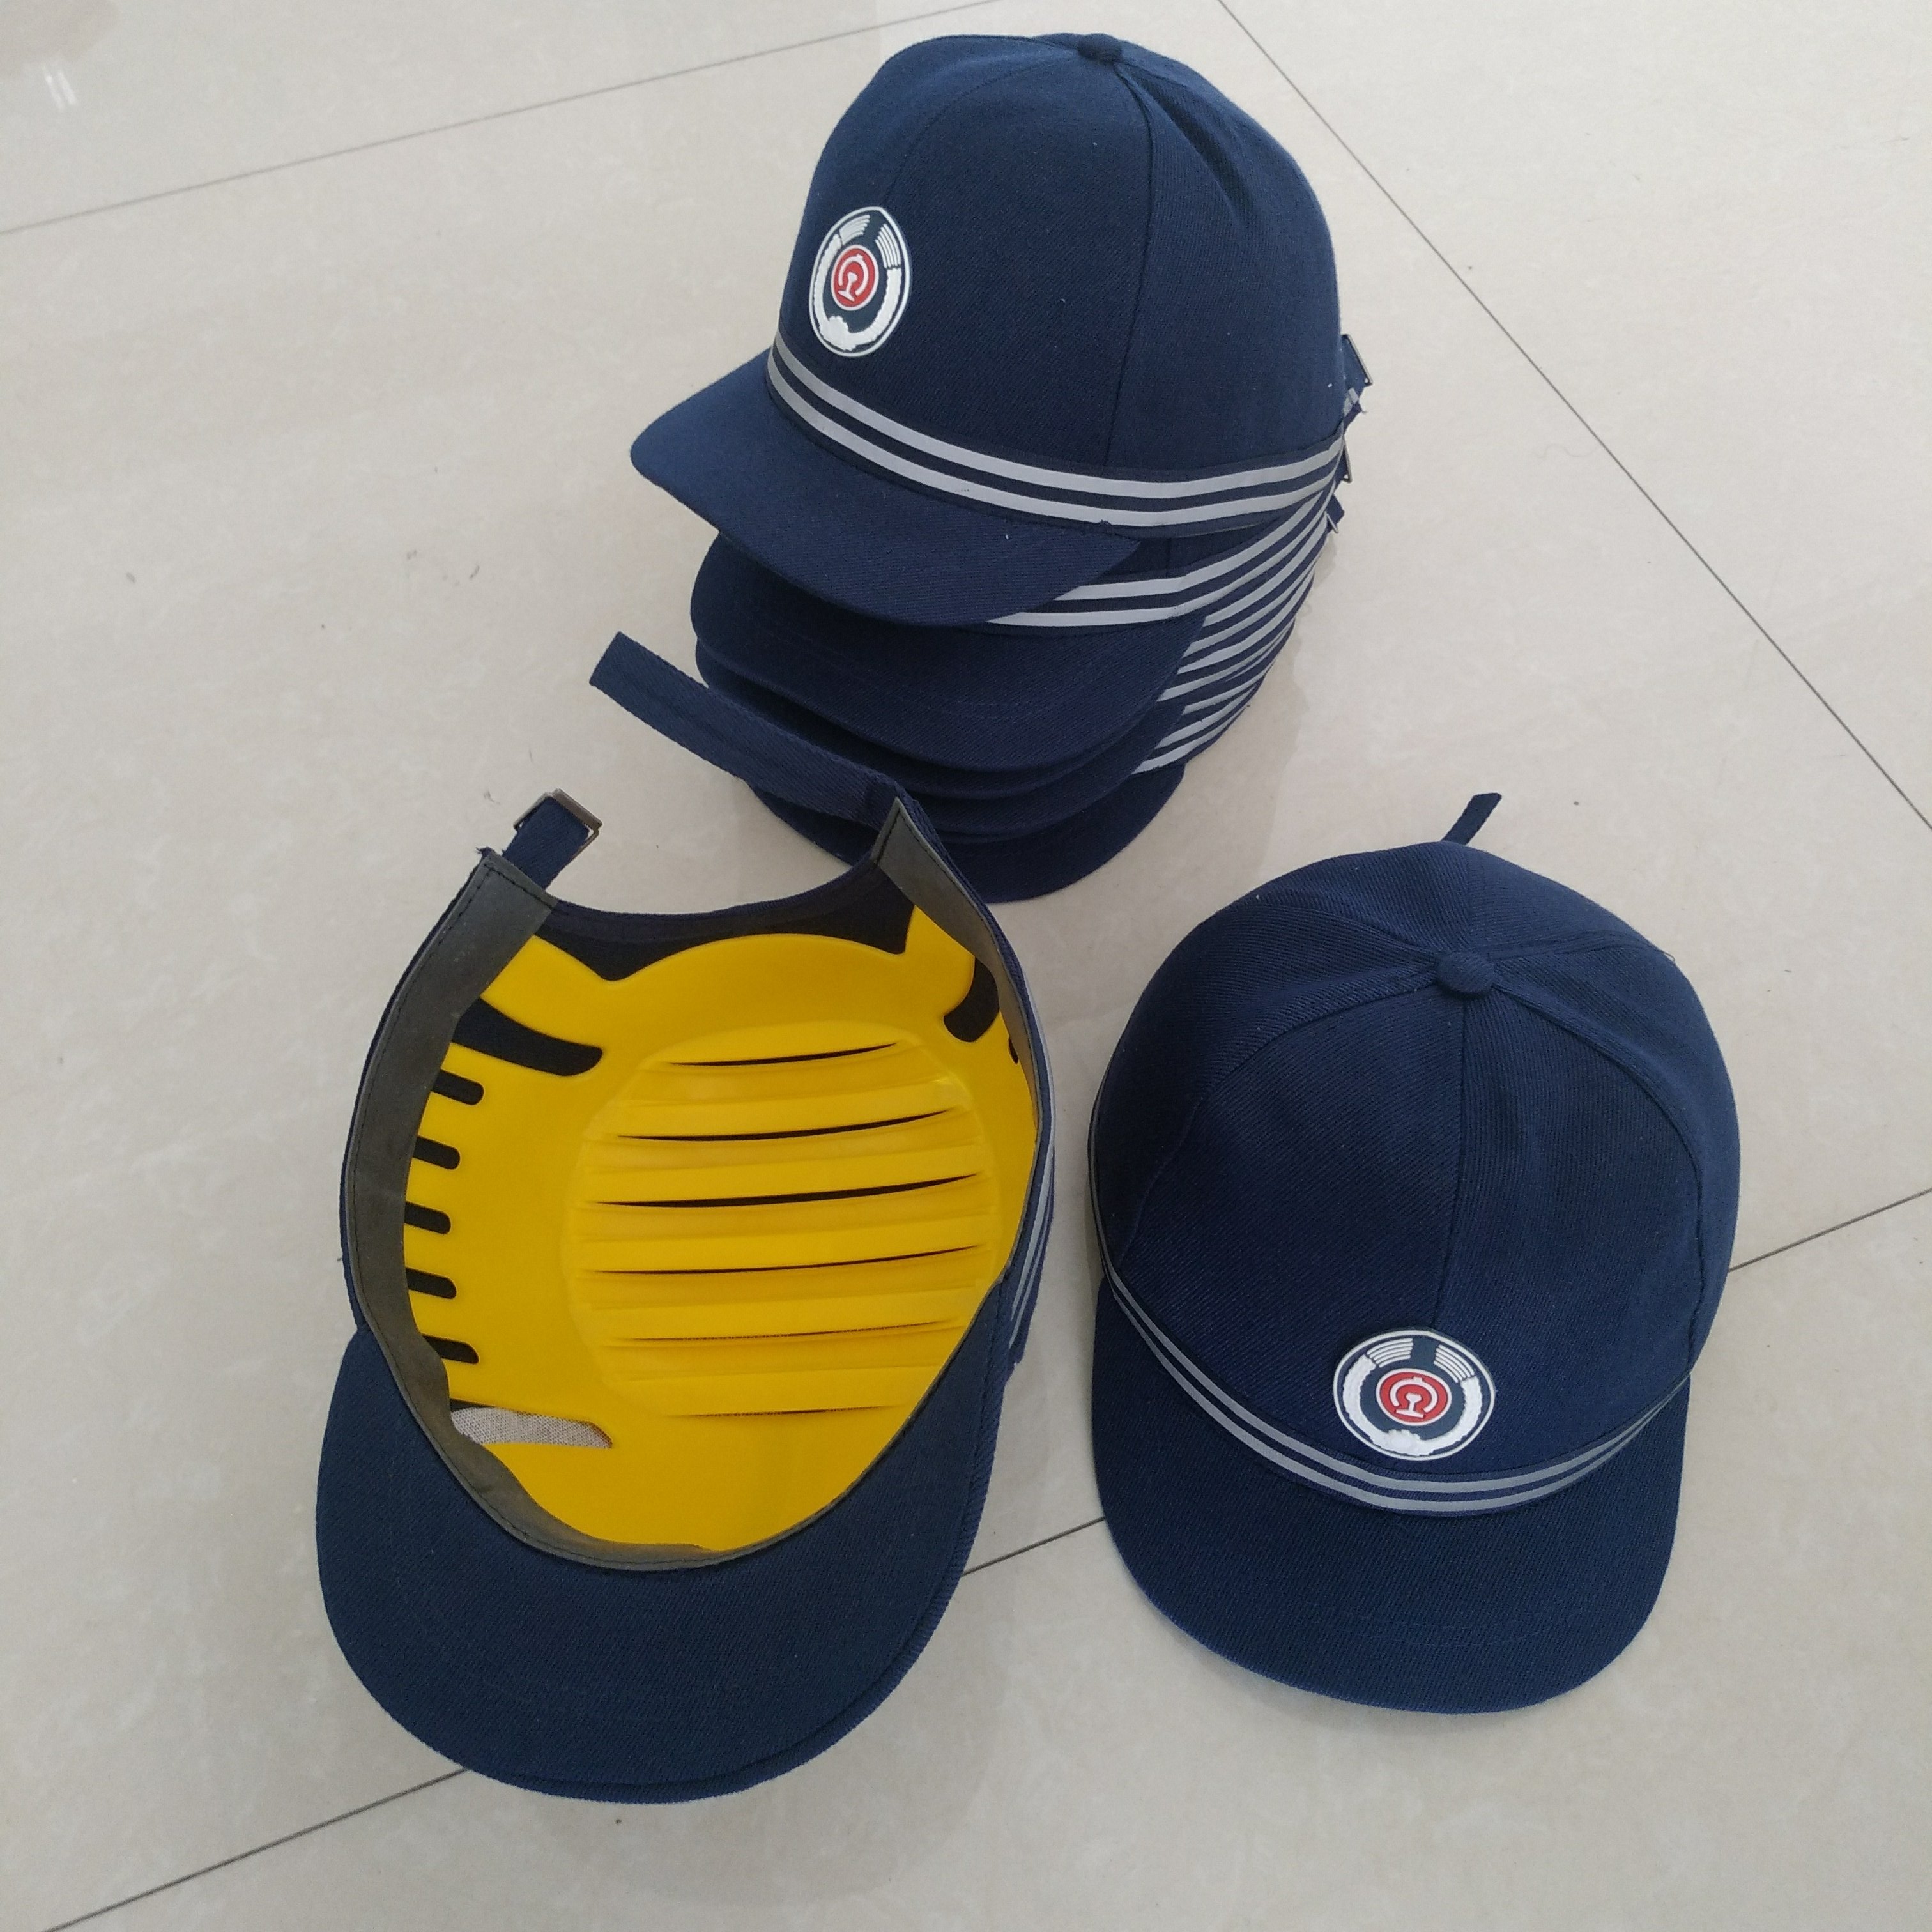 铁路专用安全帽 铁路安全防护帽 蓝黄红 轻便型带反光条